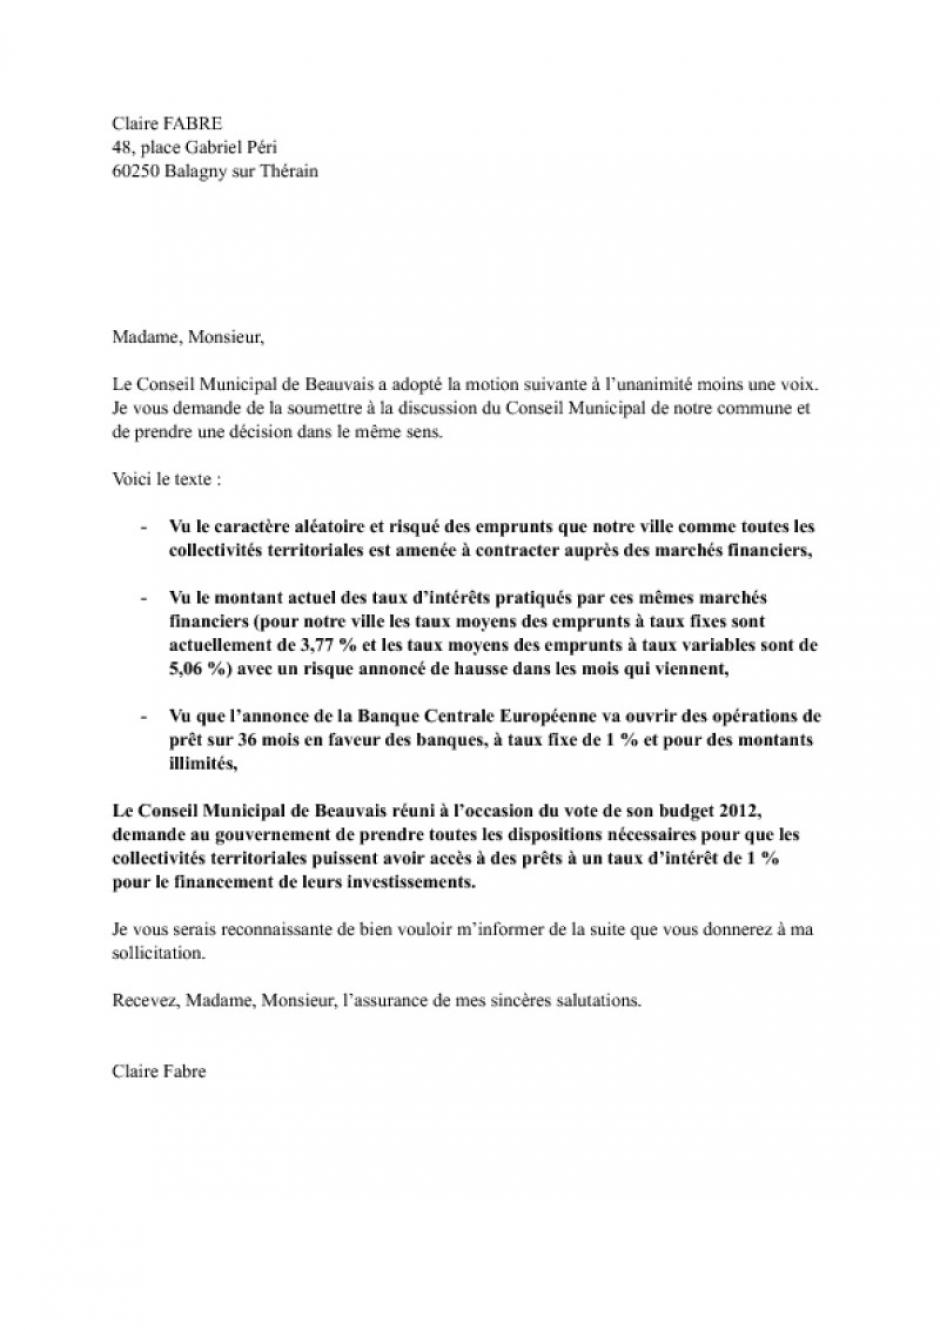 Nouvelle adoption à l'unanimité par un conseil municipal de droite d'une délibération sur les emprunts à 1 % - Balagny-sur-Thérain, janvier 2012